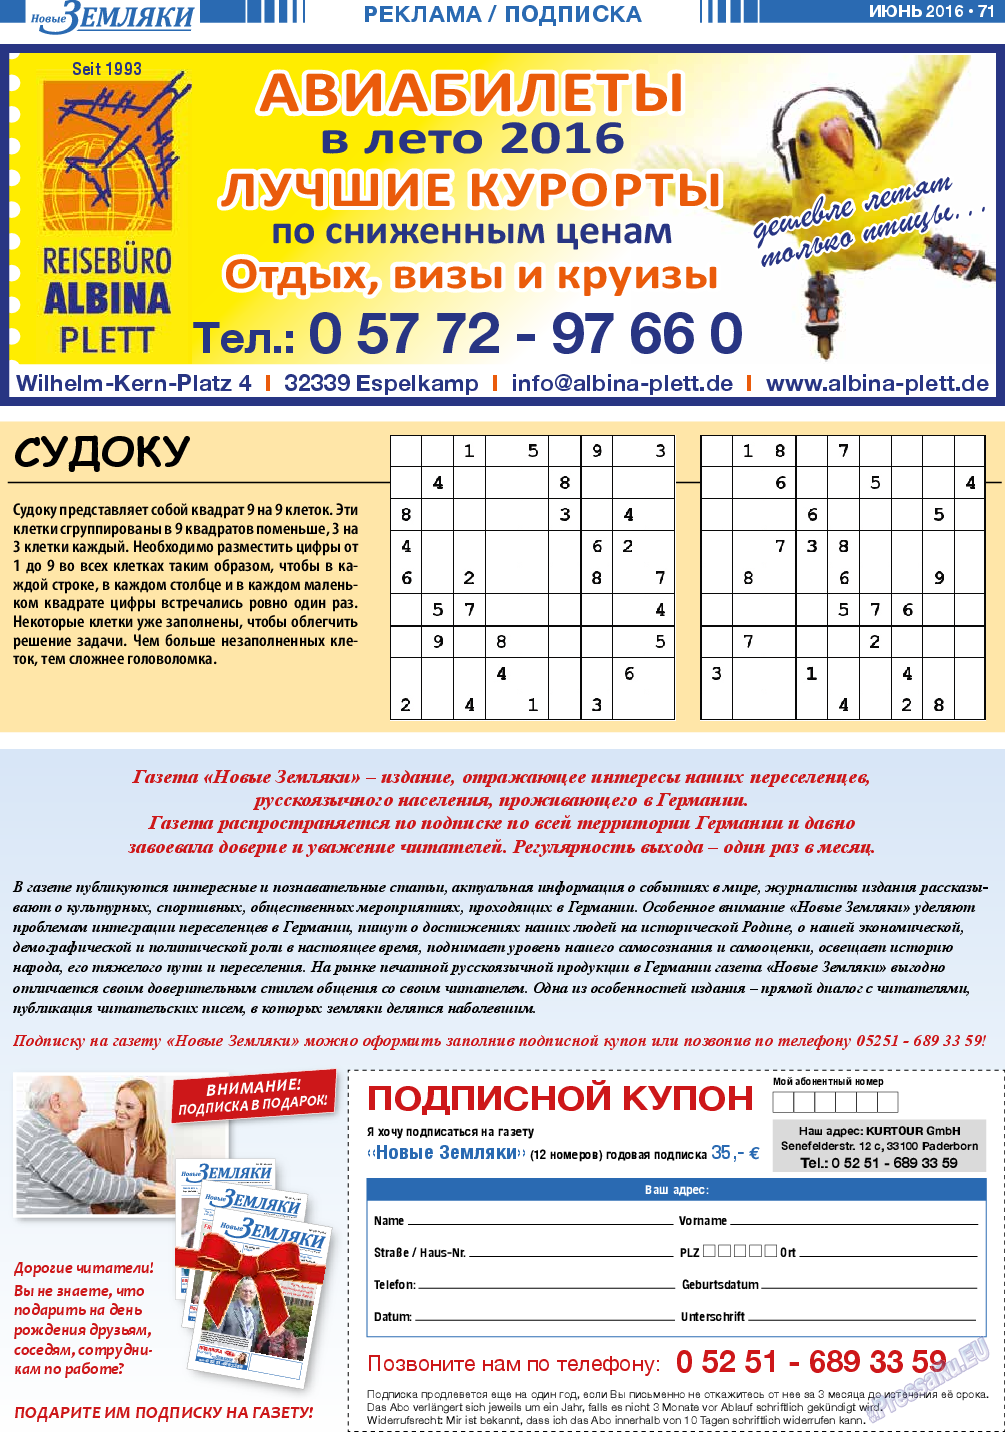 Новые Земляки, газета. 2016 №6 стр.71